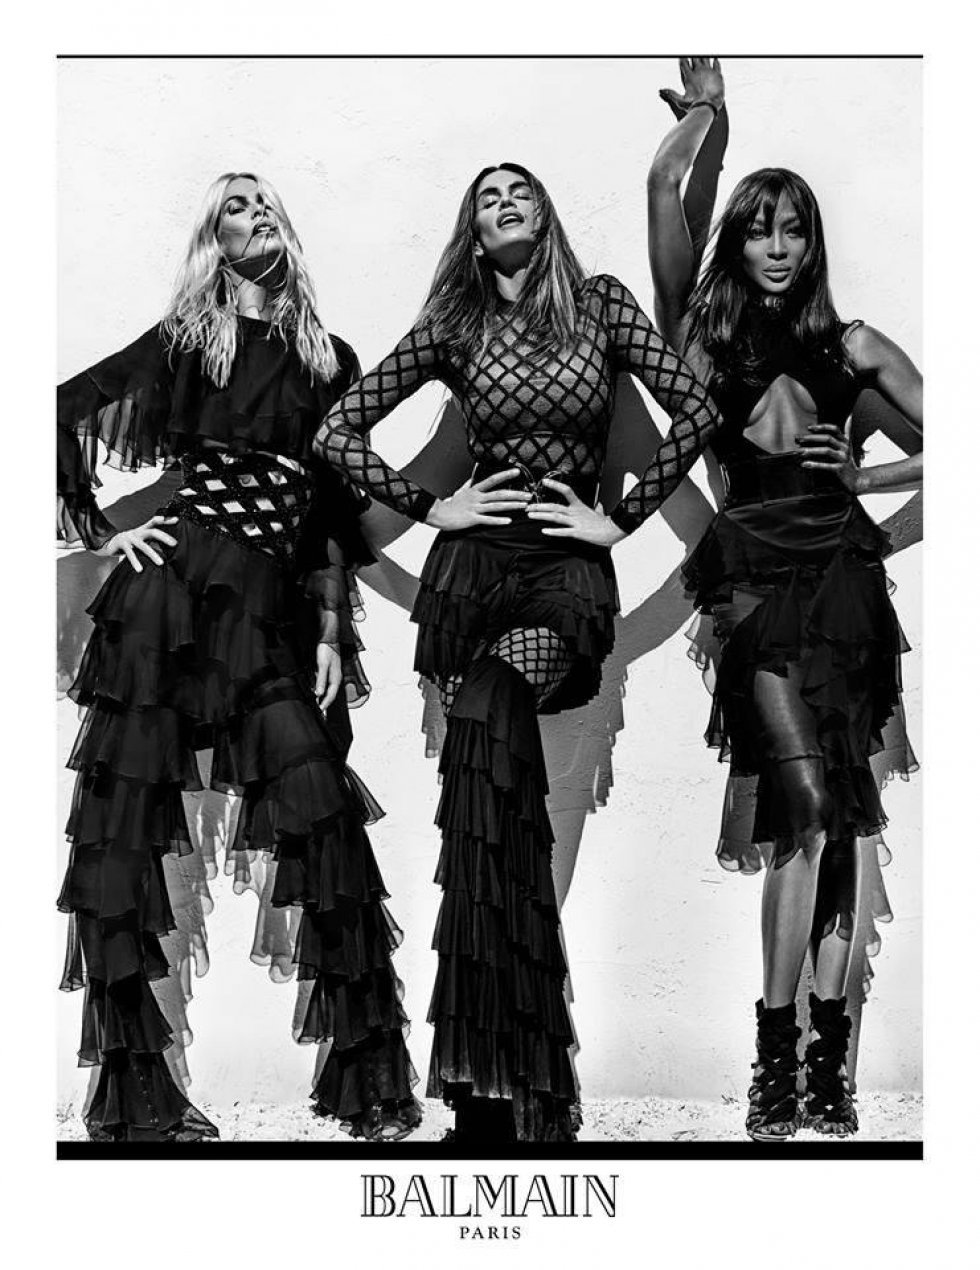 90'er topmodeller Claudia Schiffer, Cindy Crawford og Naomi Campbell optræder sammen i nyt fashionshoot